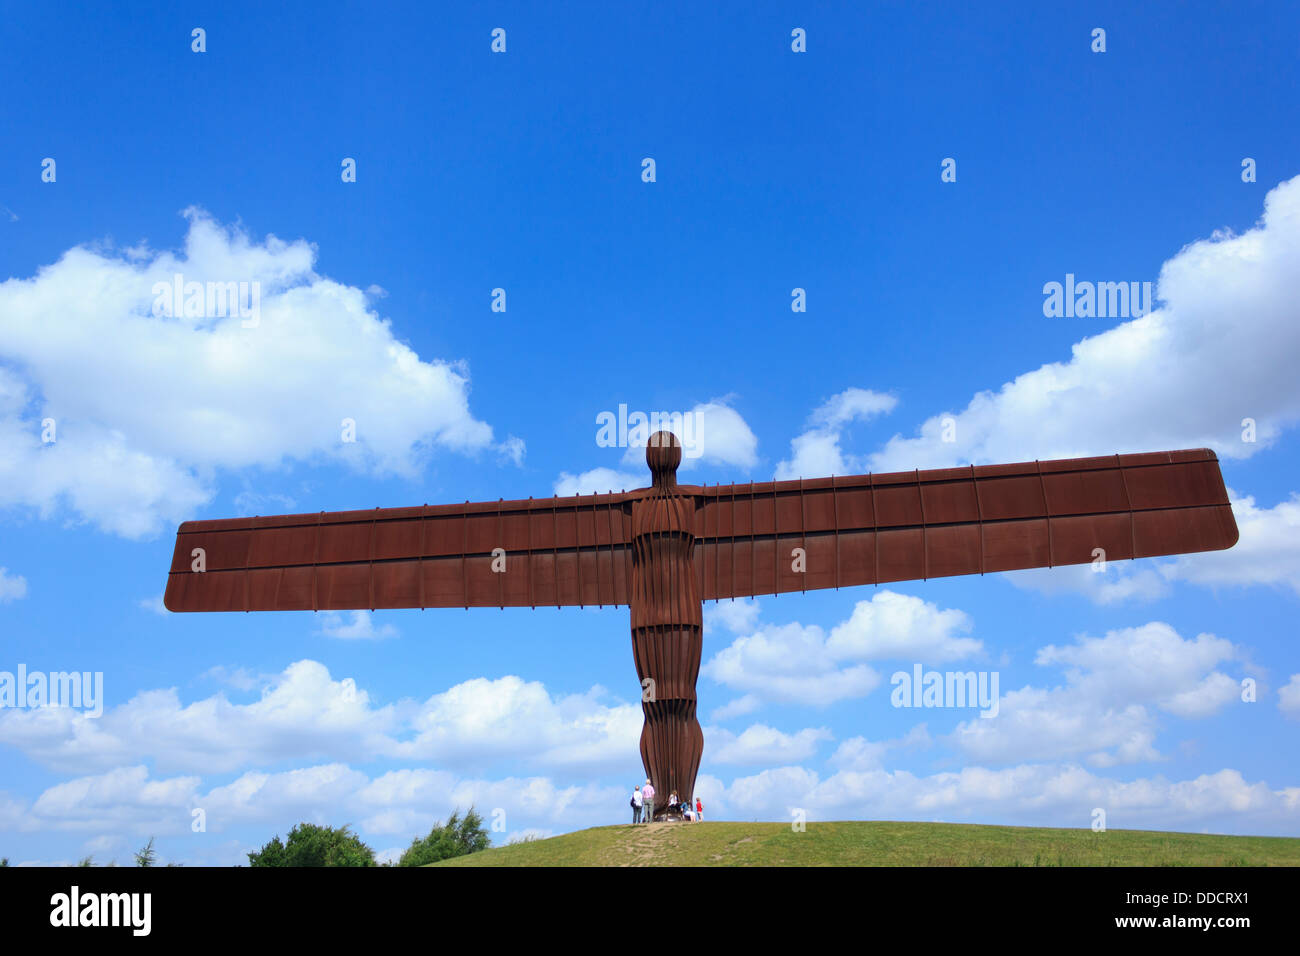 Engel des Nordens, die von Touristen besucht werden, an einem sonnigen Tag in Newcastle, England. Stockfoto